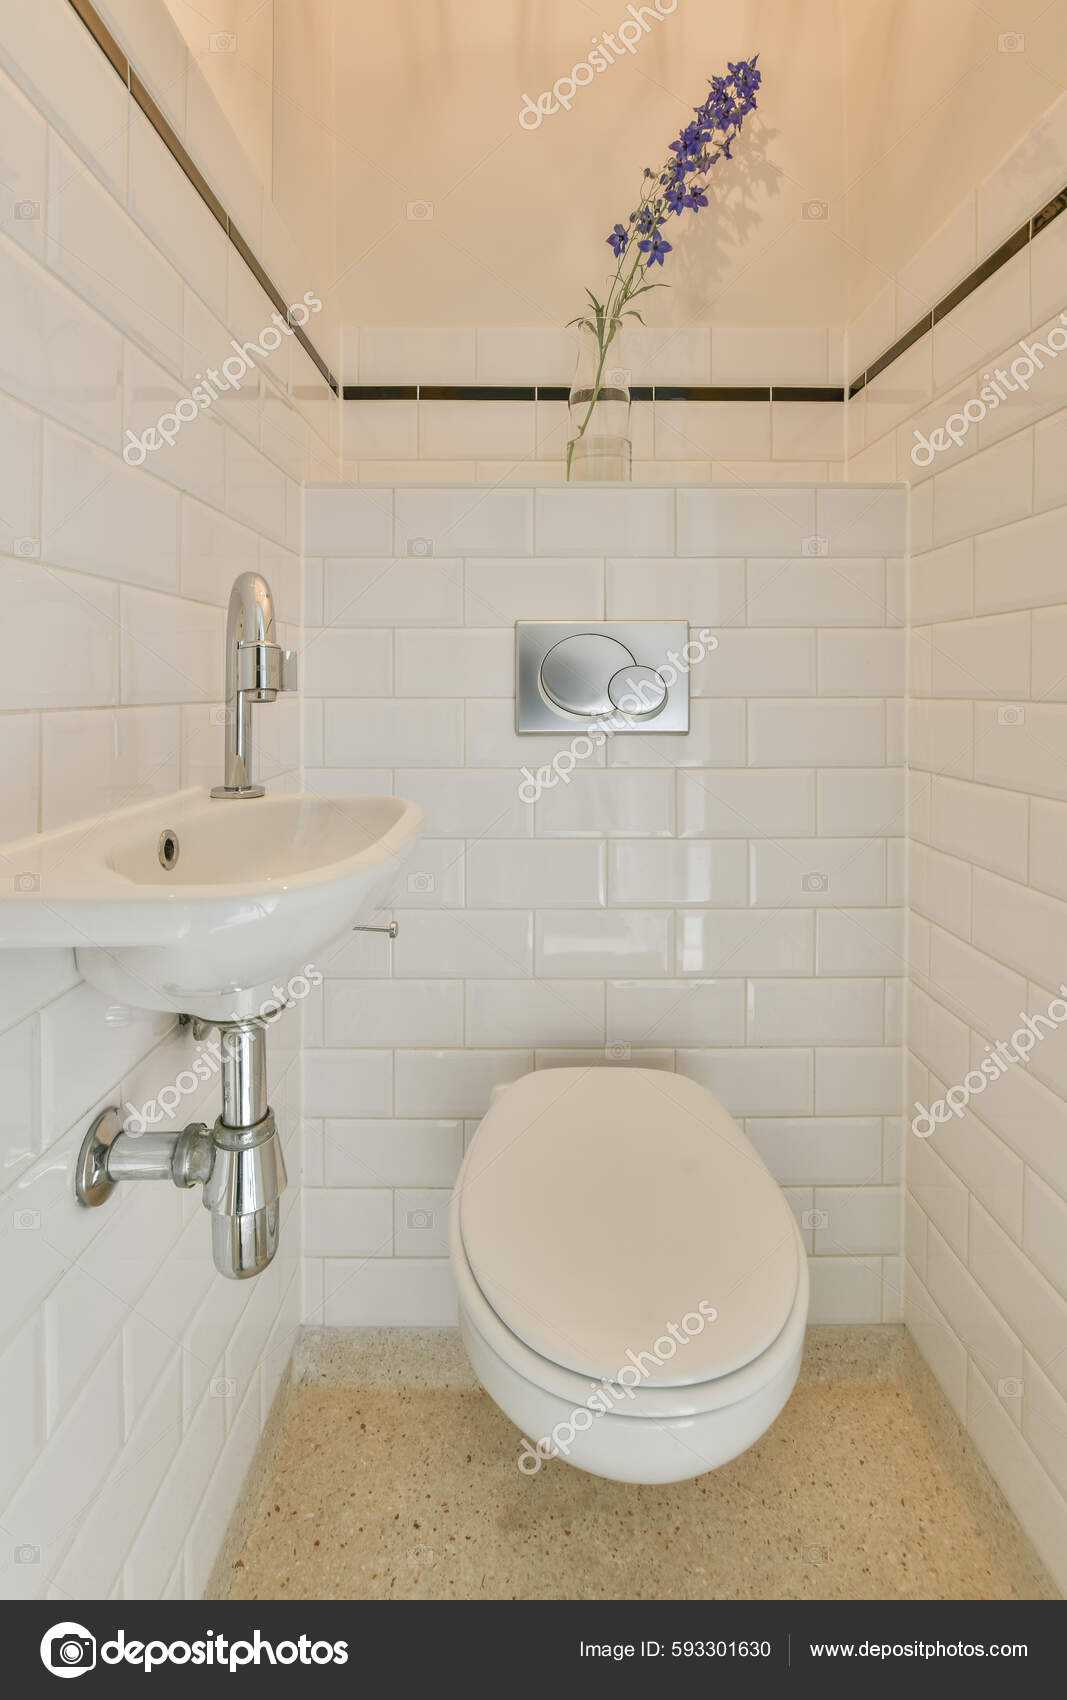 Tabique Vidrio Entre Grifo Ducha Inodoro Colgado Pared Baño Moderno:  fotografía de stock © procontributors #604033608